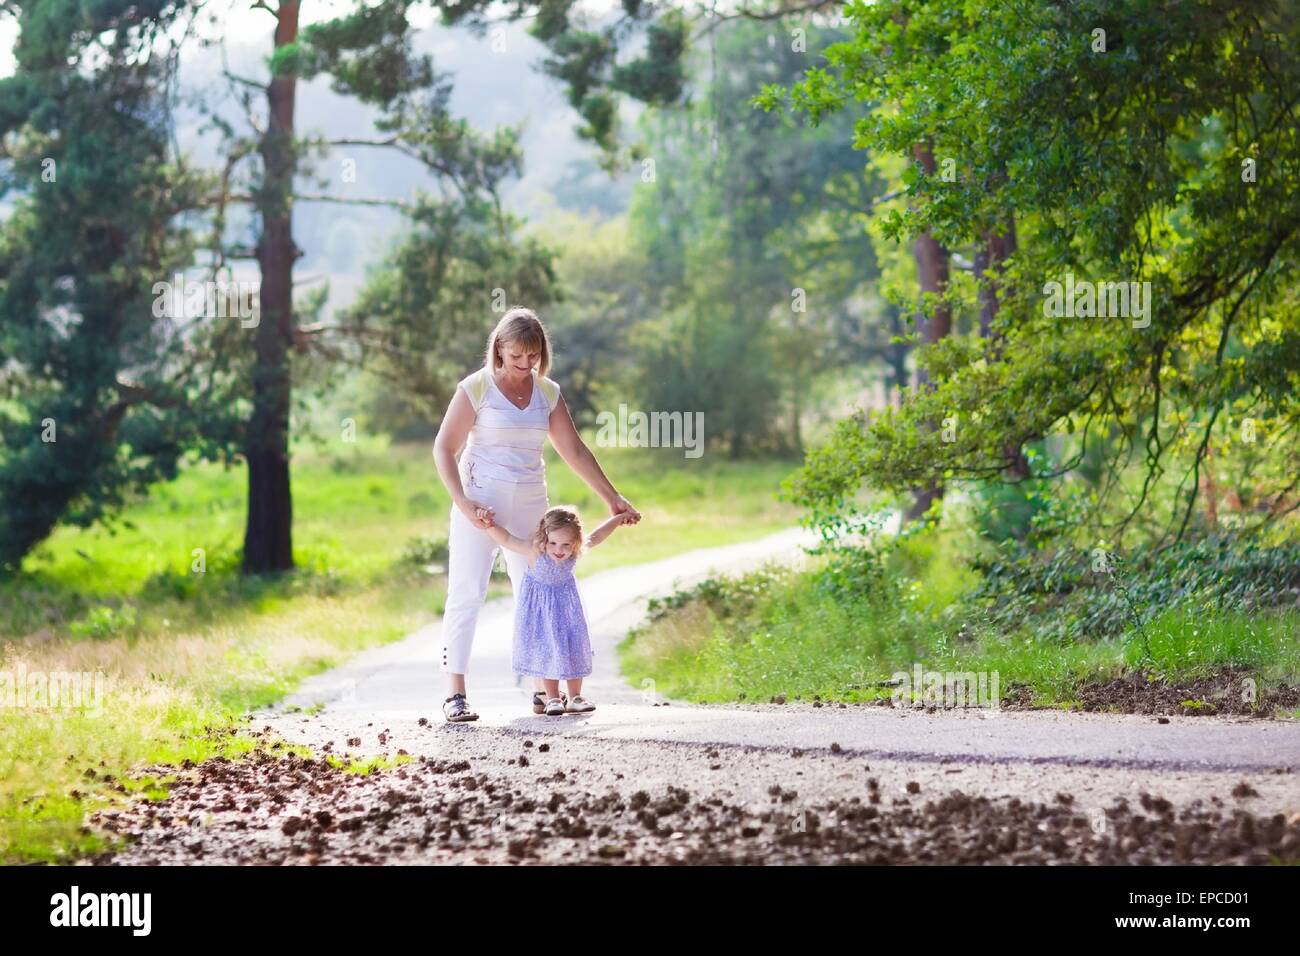 Glücklich aktive Frau spielt mit einem niedlichen kleinen Kind, liebenswert Kleinkind Mädchen im blauen Kleid, Spaß zusammen genießen Wandern Stockfoto